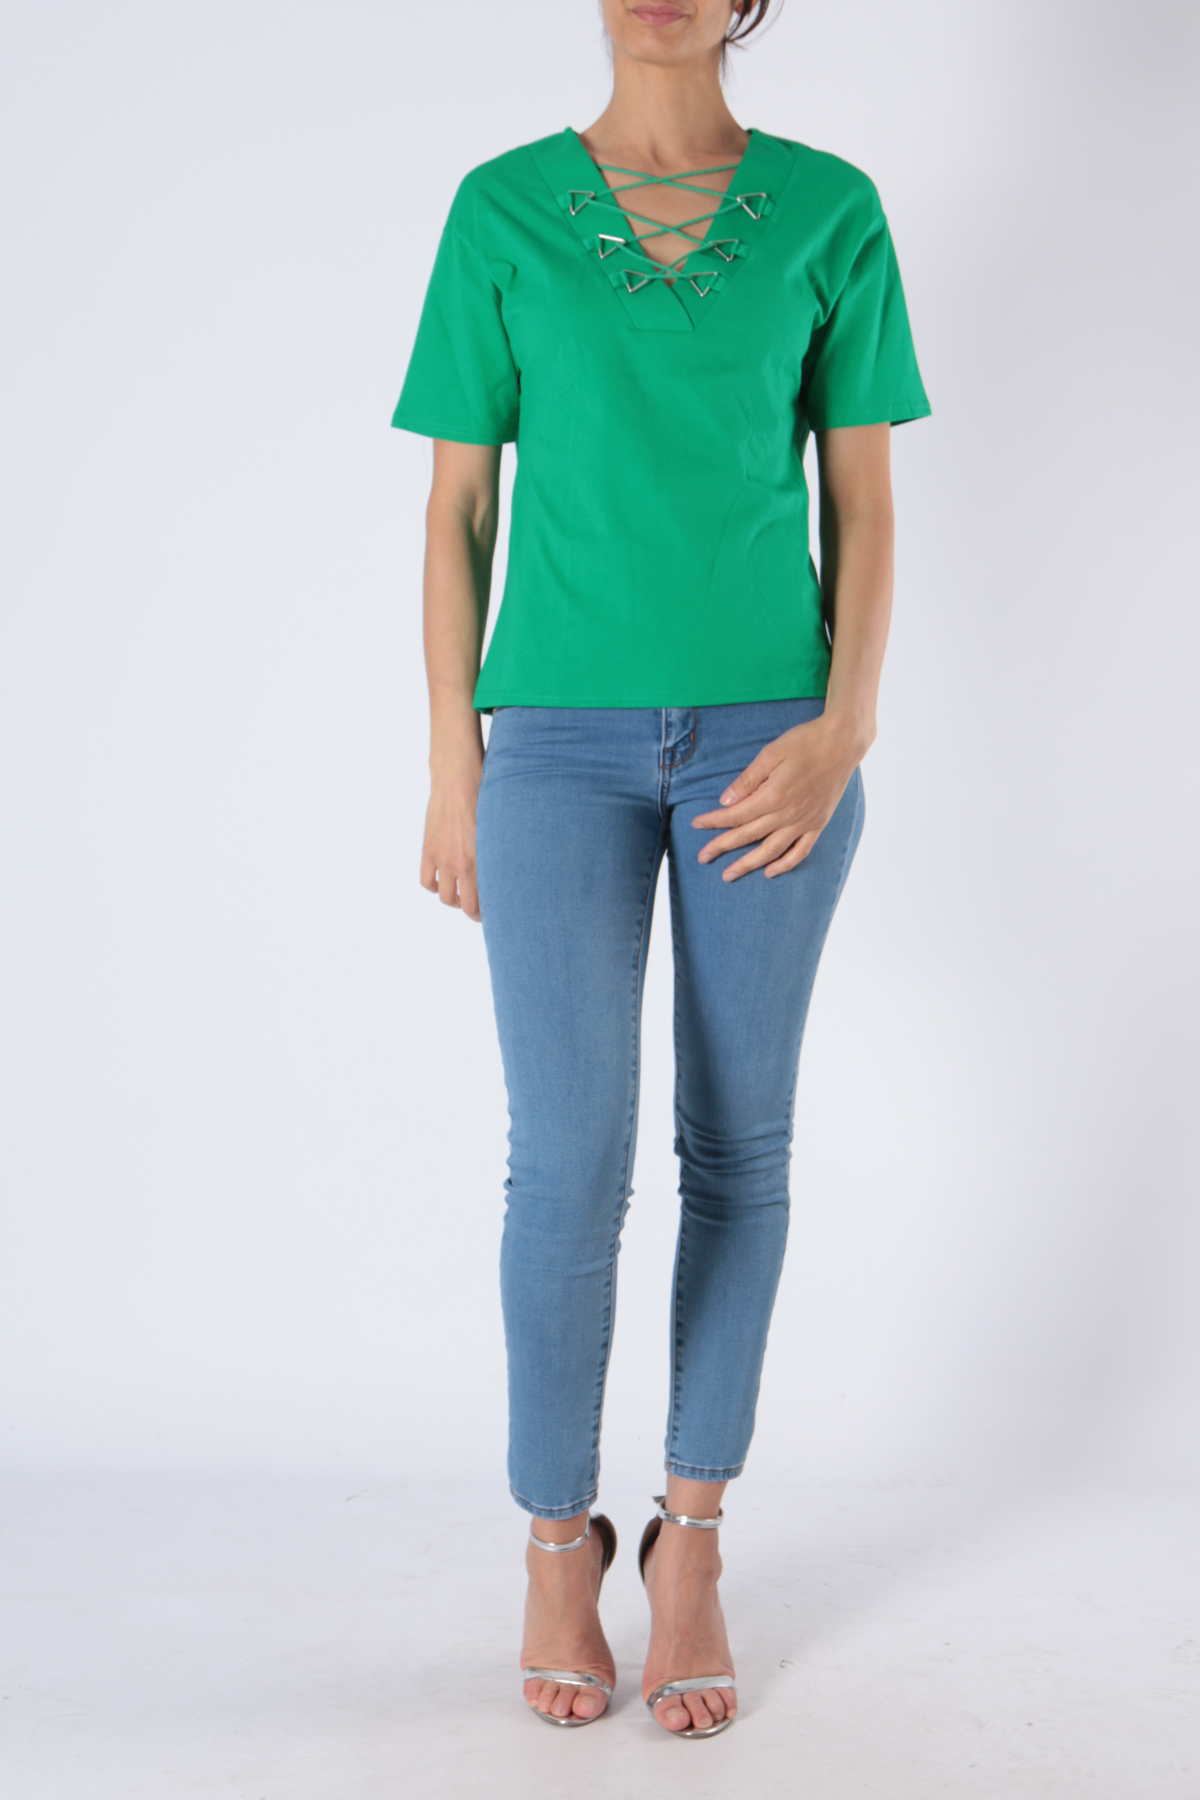 T-shirts Femme Vert Luc-ce 3292 #c Efashion Paris